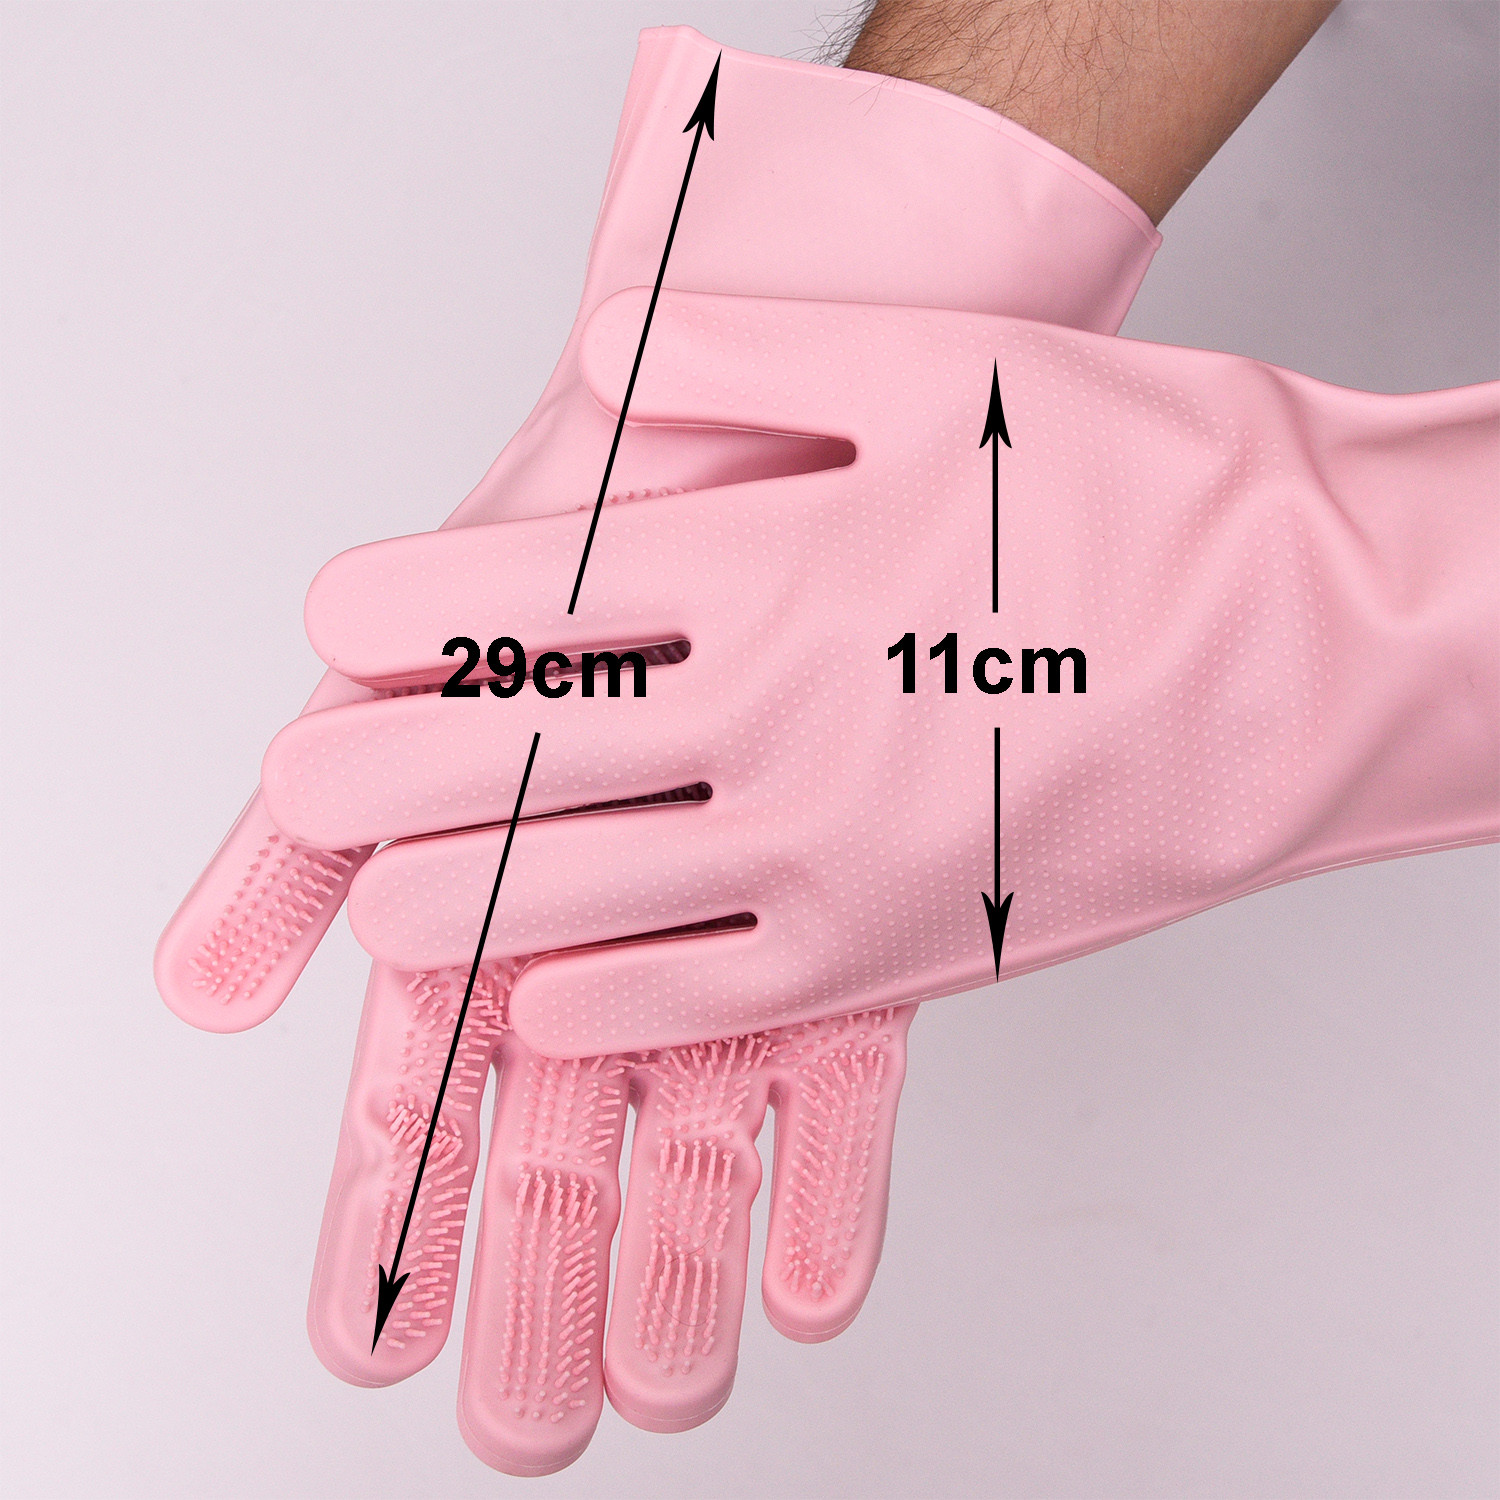 Kuber Industries Kitchen Gloves|Silicone Kitchen Dish Washing Gloves|Scrubbing Gloves For Kitchen|Car Cleaning Gloves|Bathroom Cleaning Gloves|1 Pair (Pink)